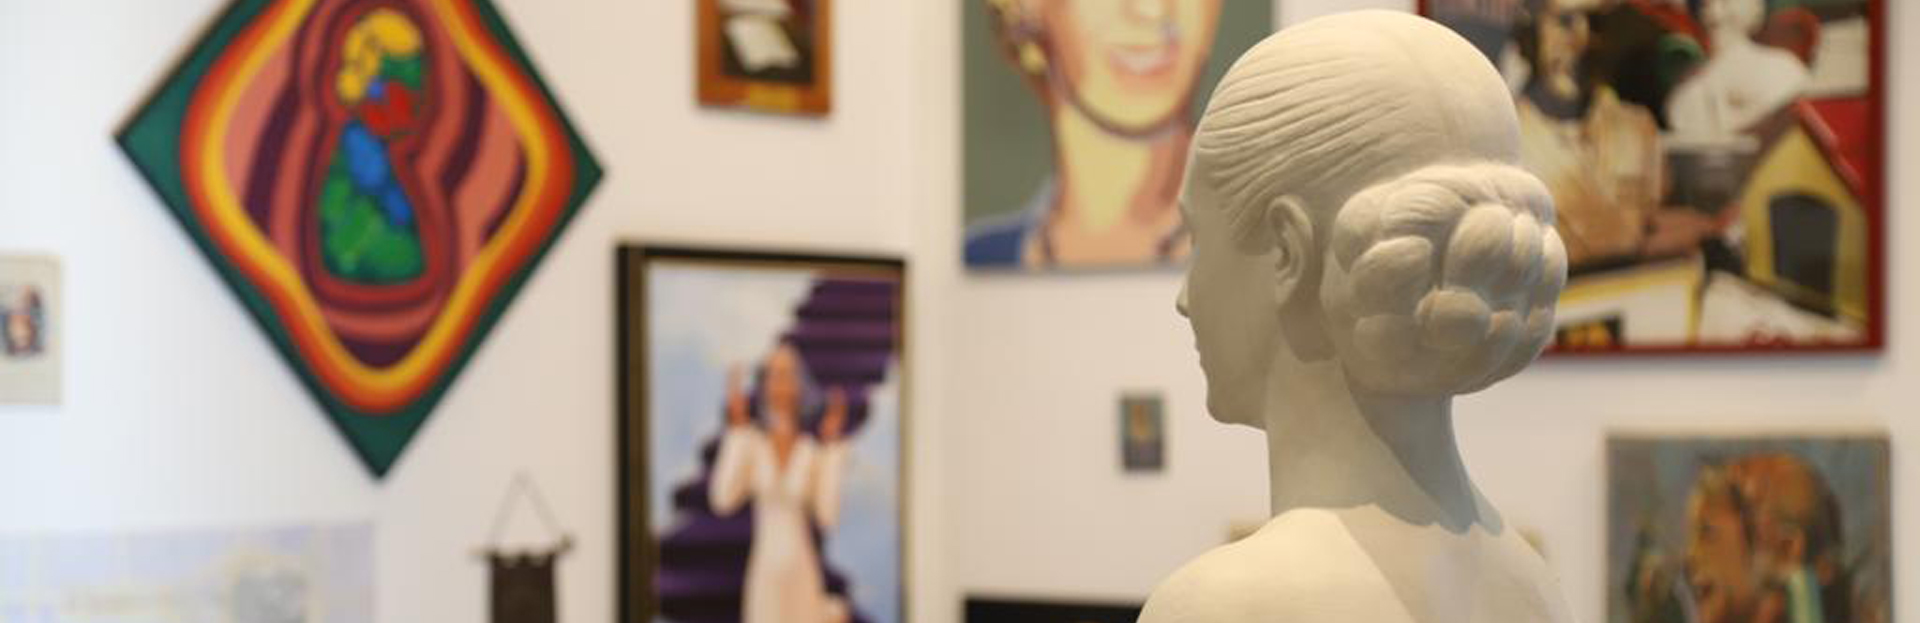 Se inauguró la exposición Atlas Evita. Una colección de imágenes plebeyas